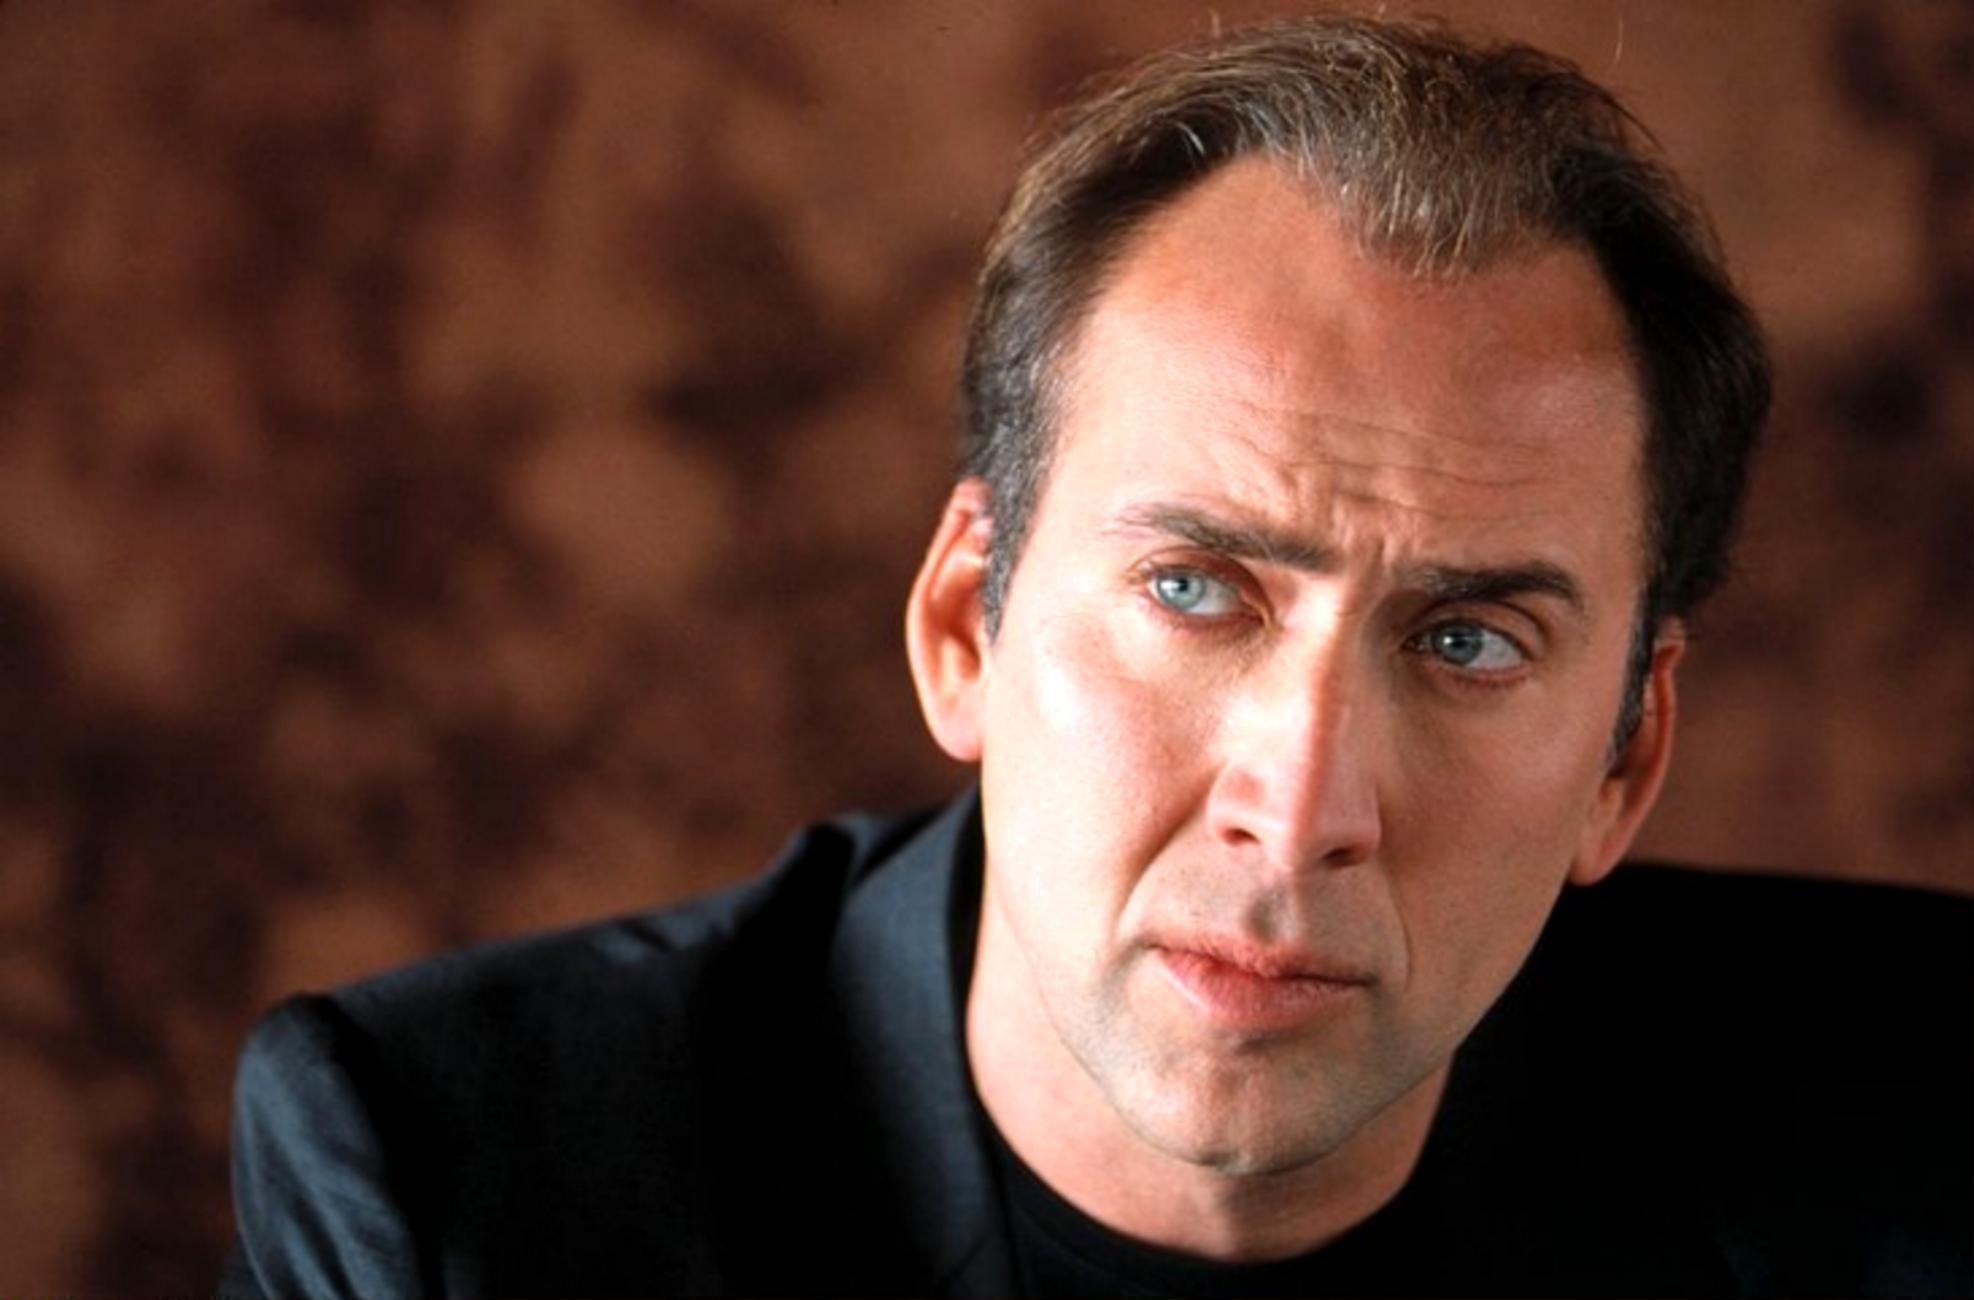 Nicolas Cage Picture Wallpaper Inn